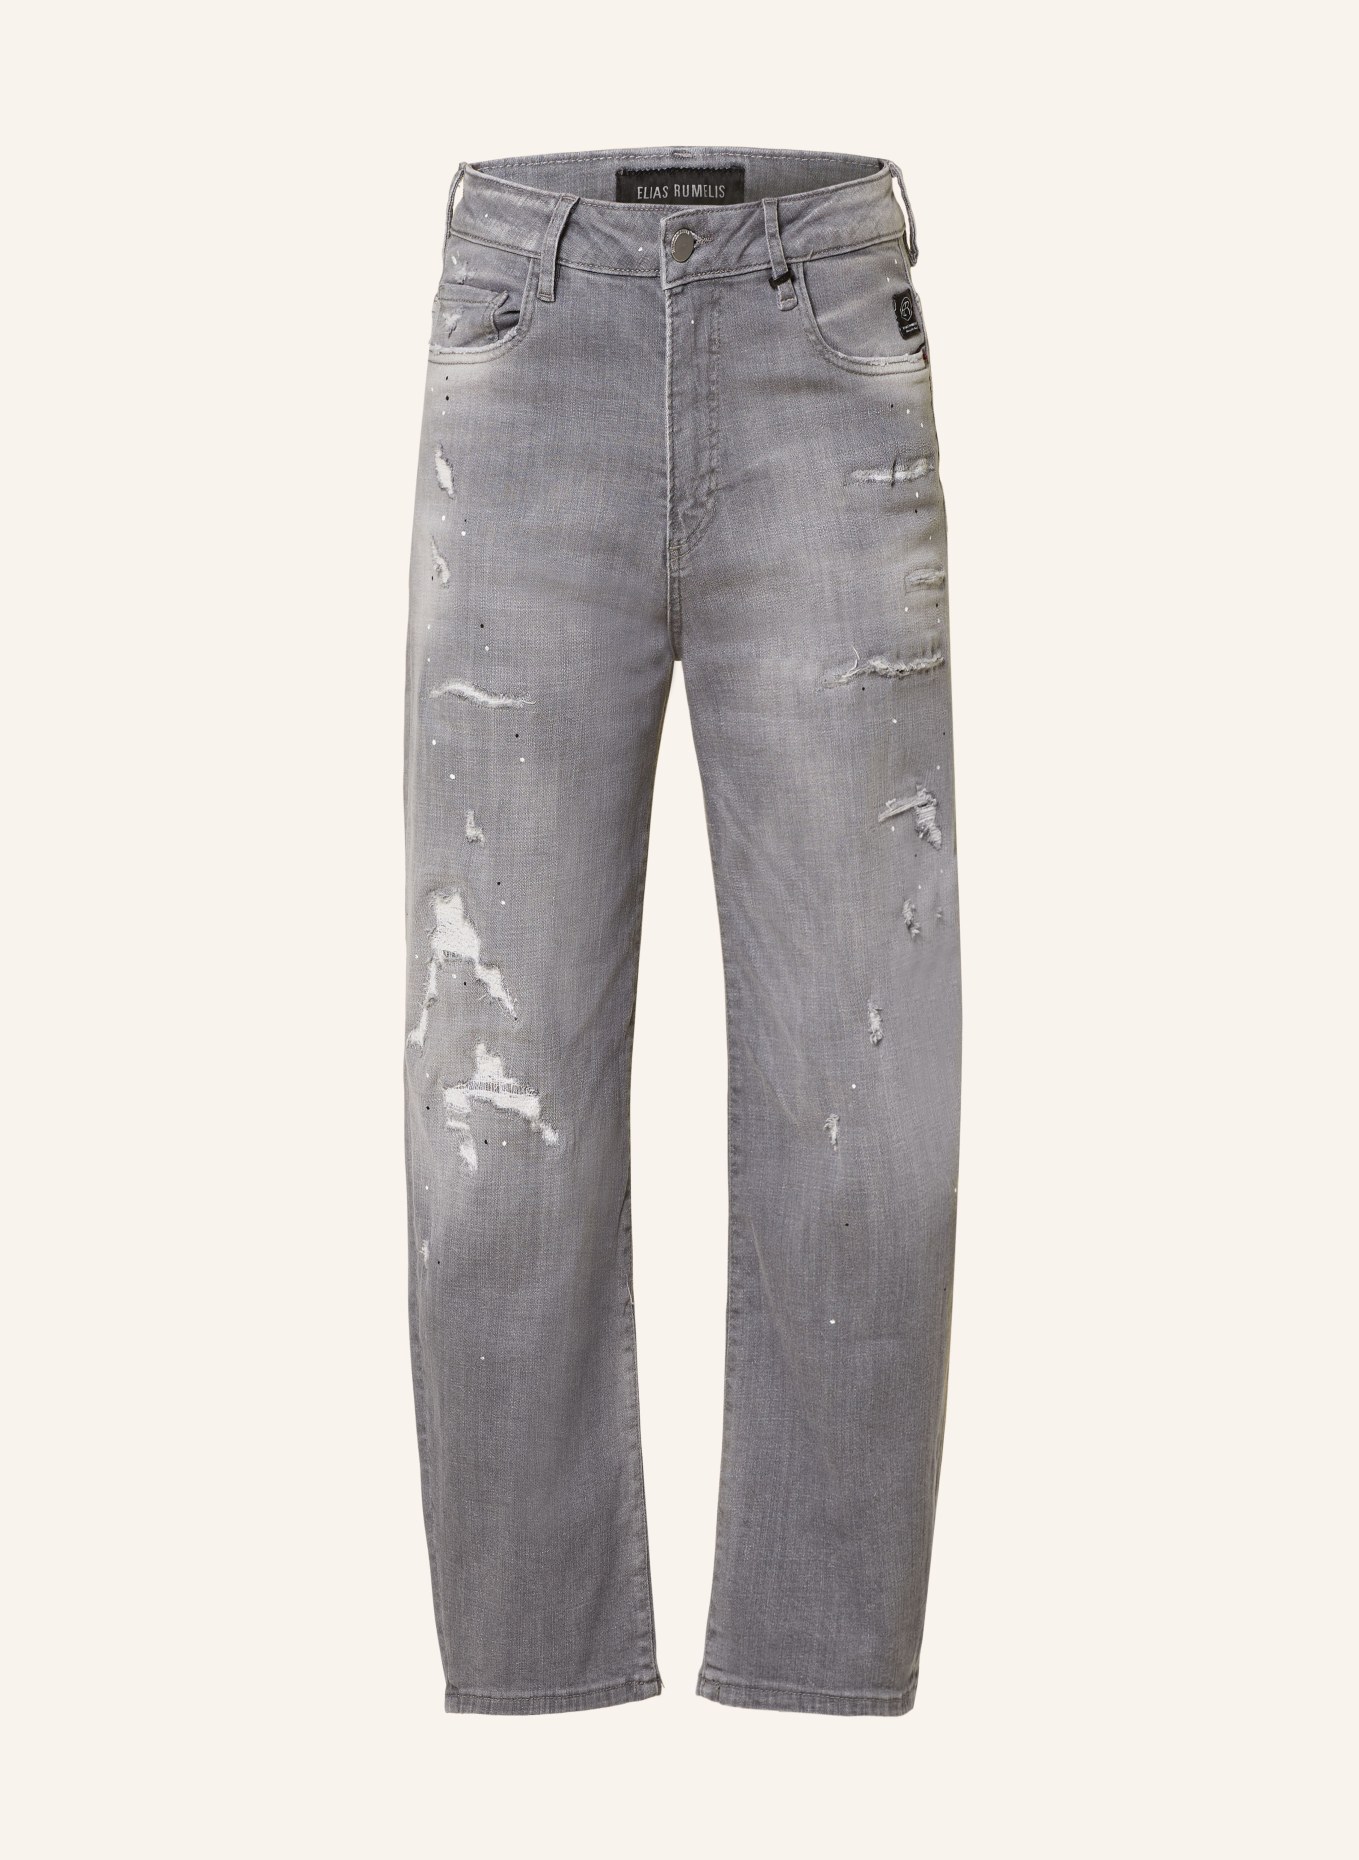 ELIAS RUMELIS Destroyed Jeans ERYOANA, Farbe: 676 pale grey (Bild 1)